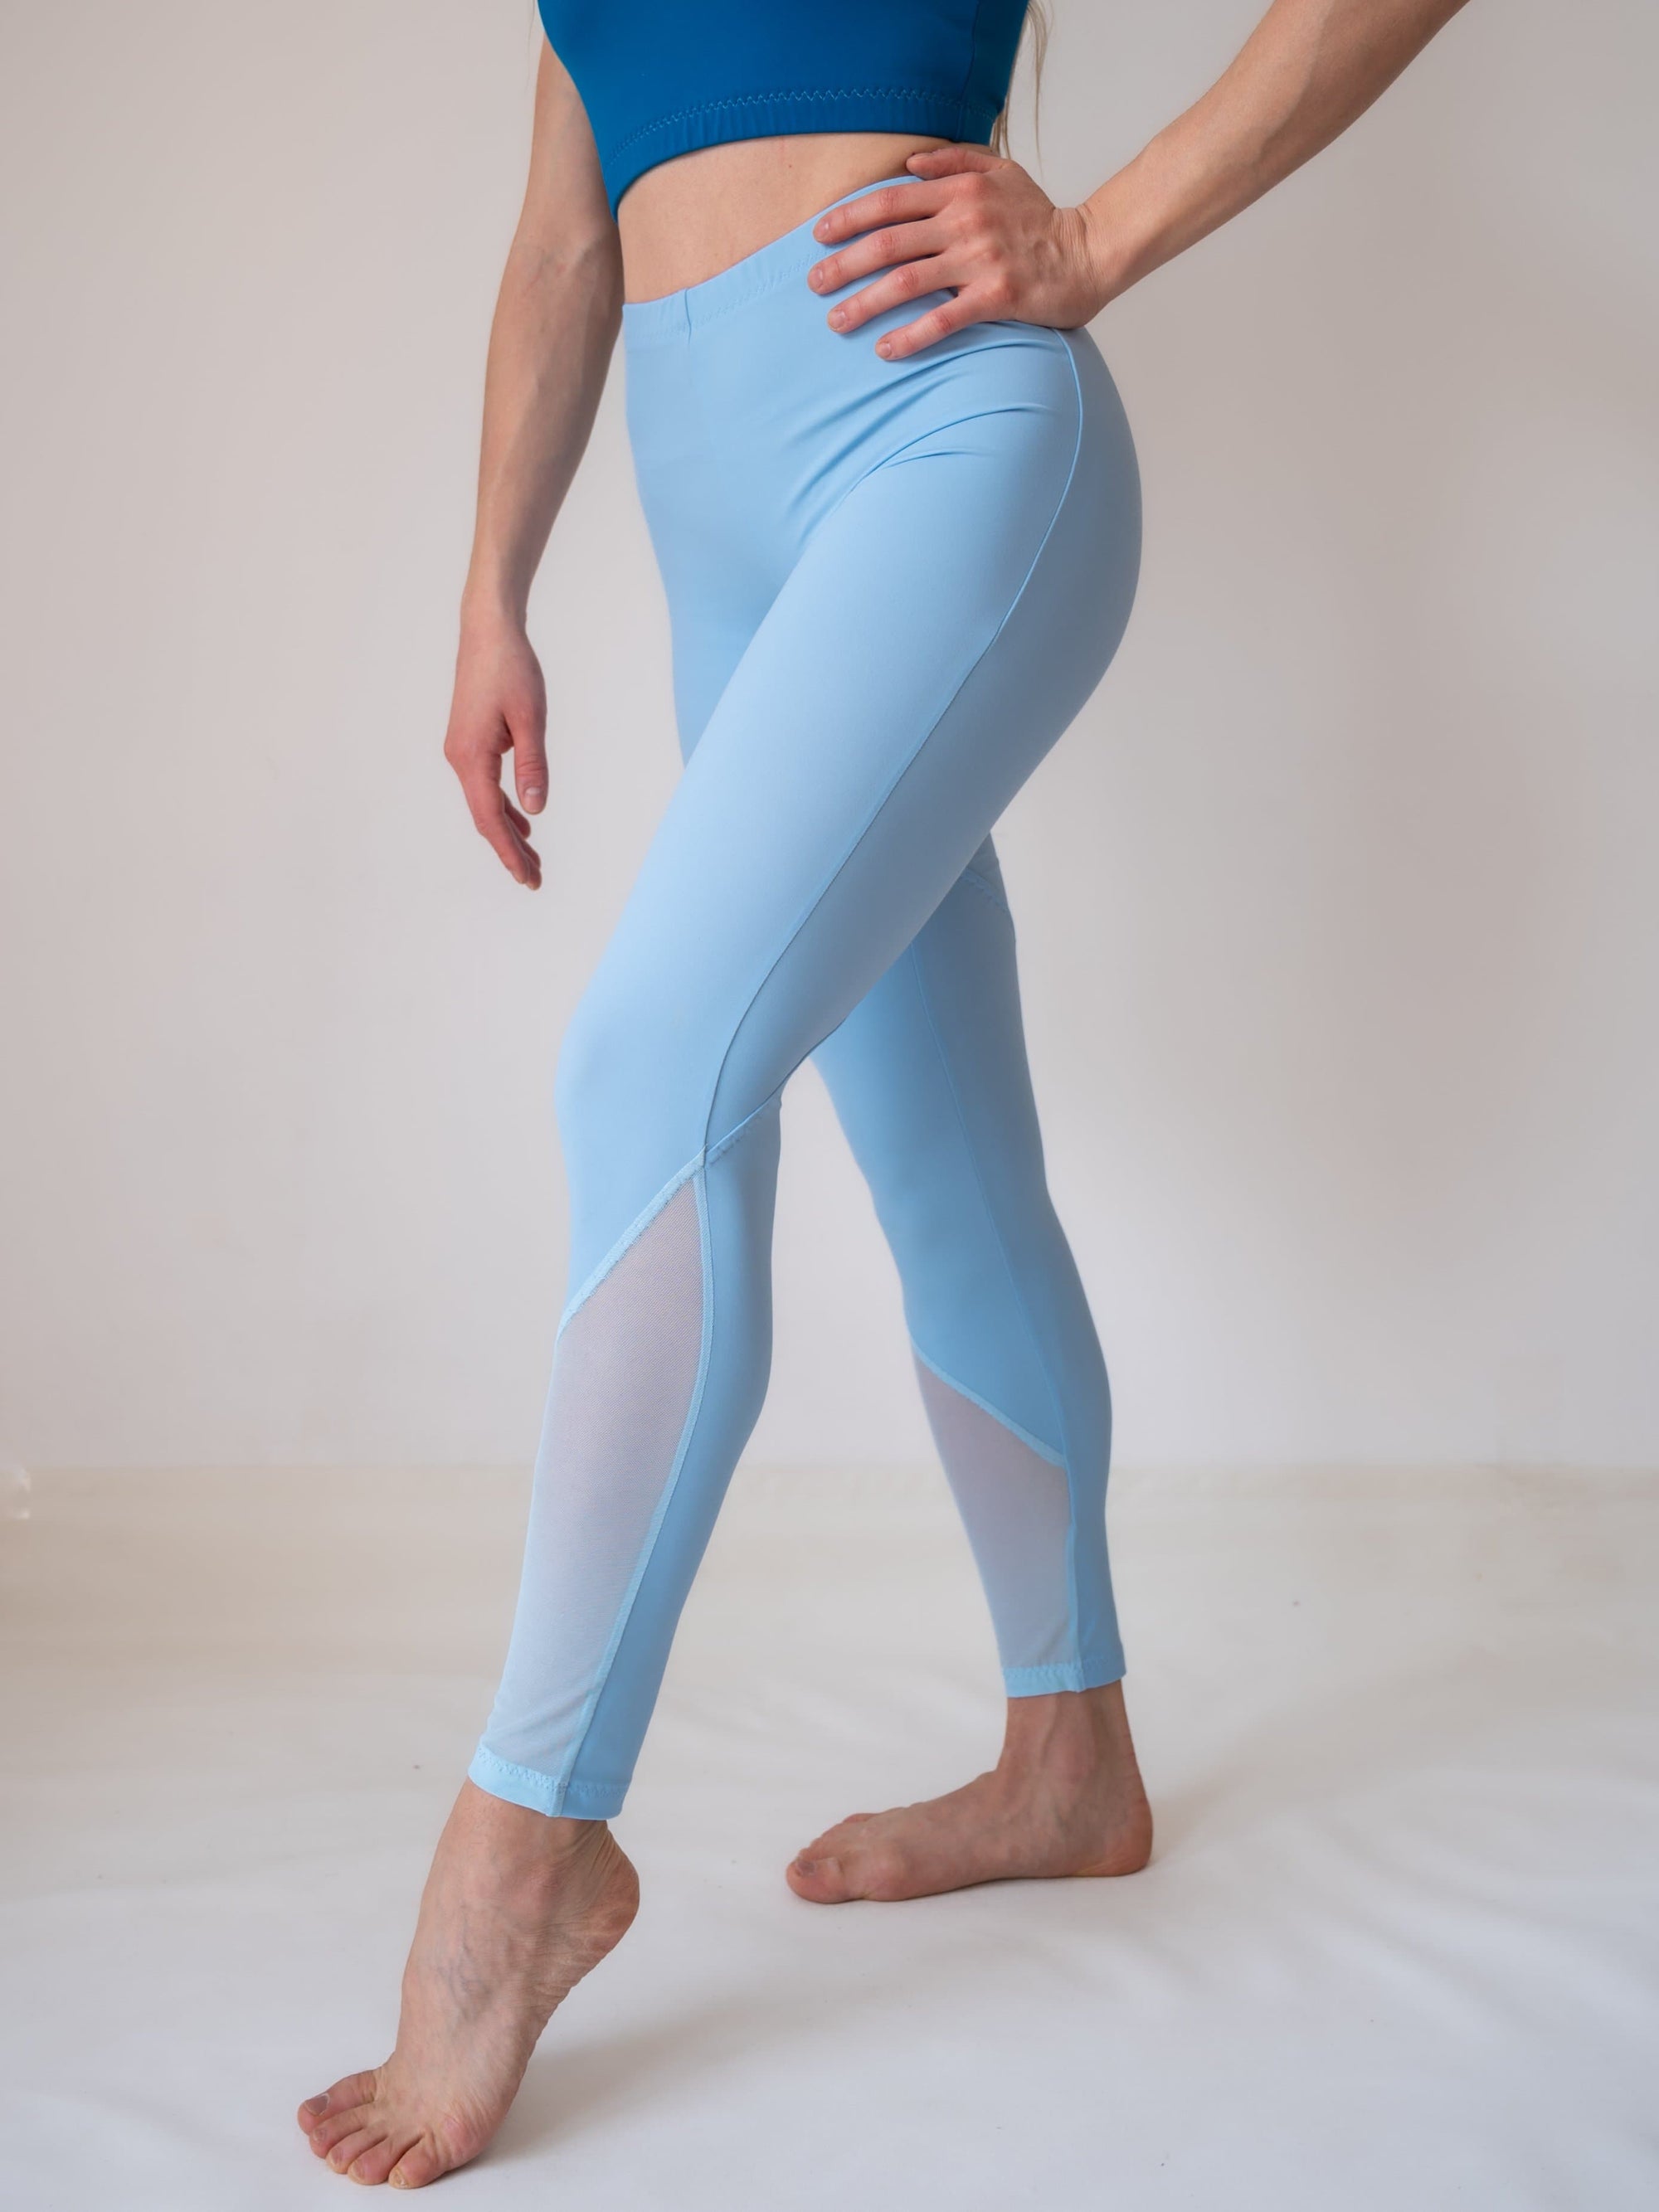 Yoga Women's Light Blue 7/8 Leggings